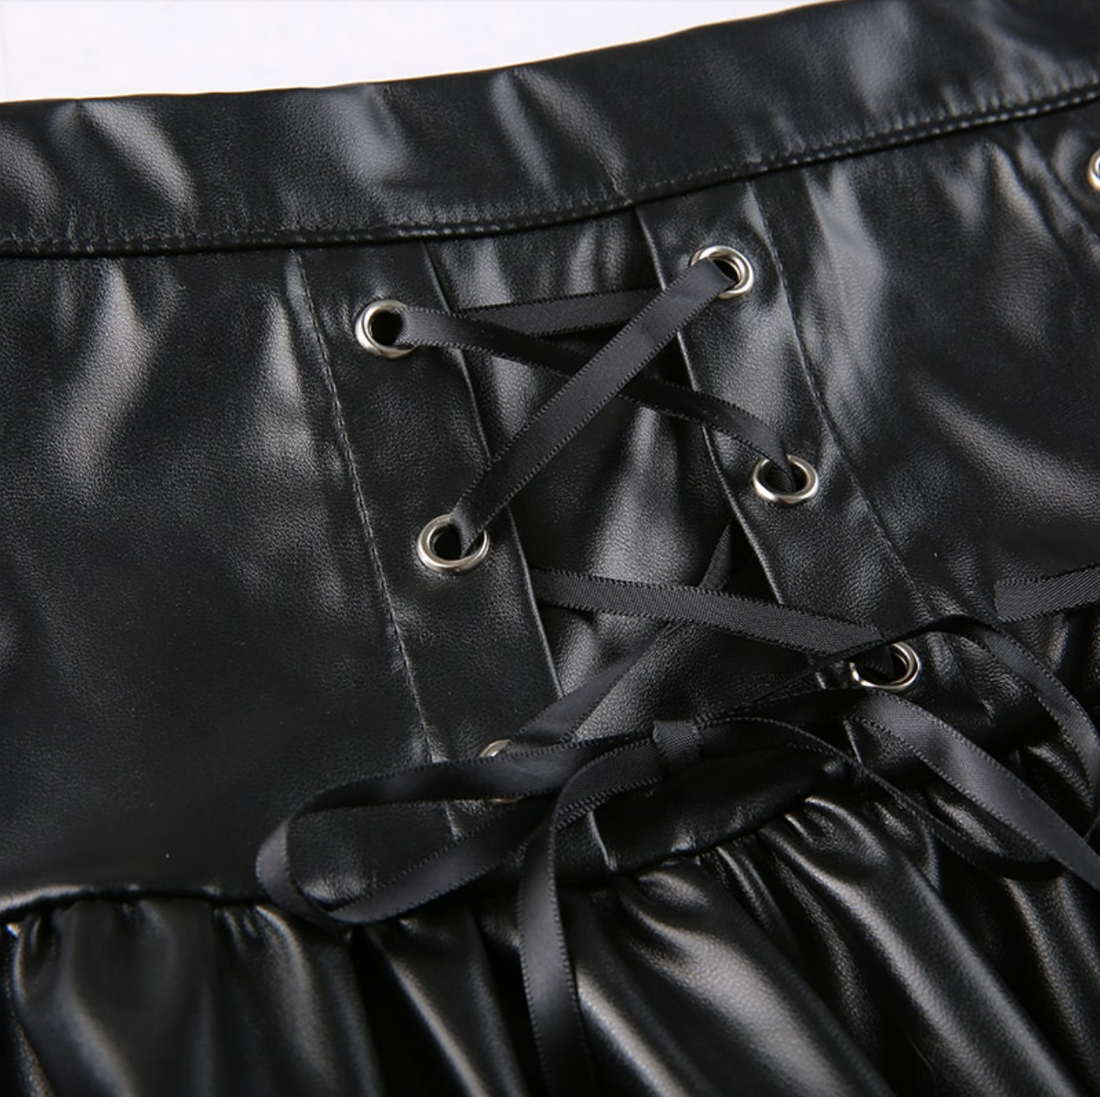 Women's Summer Punk Style PU Leather Lace Up Hight Waist Mini Skirt